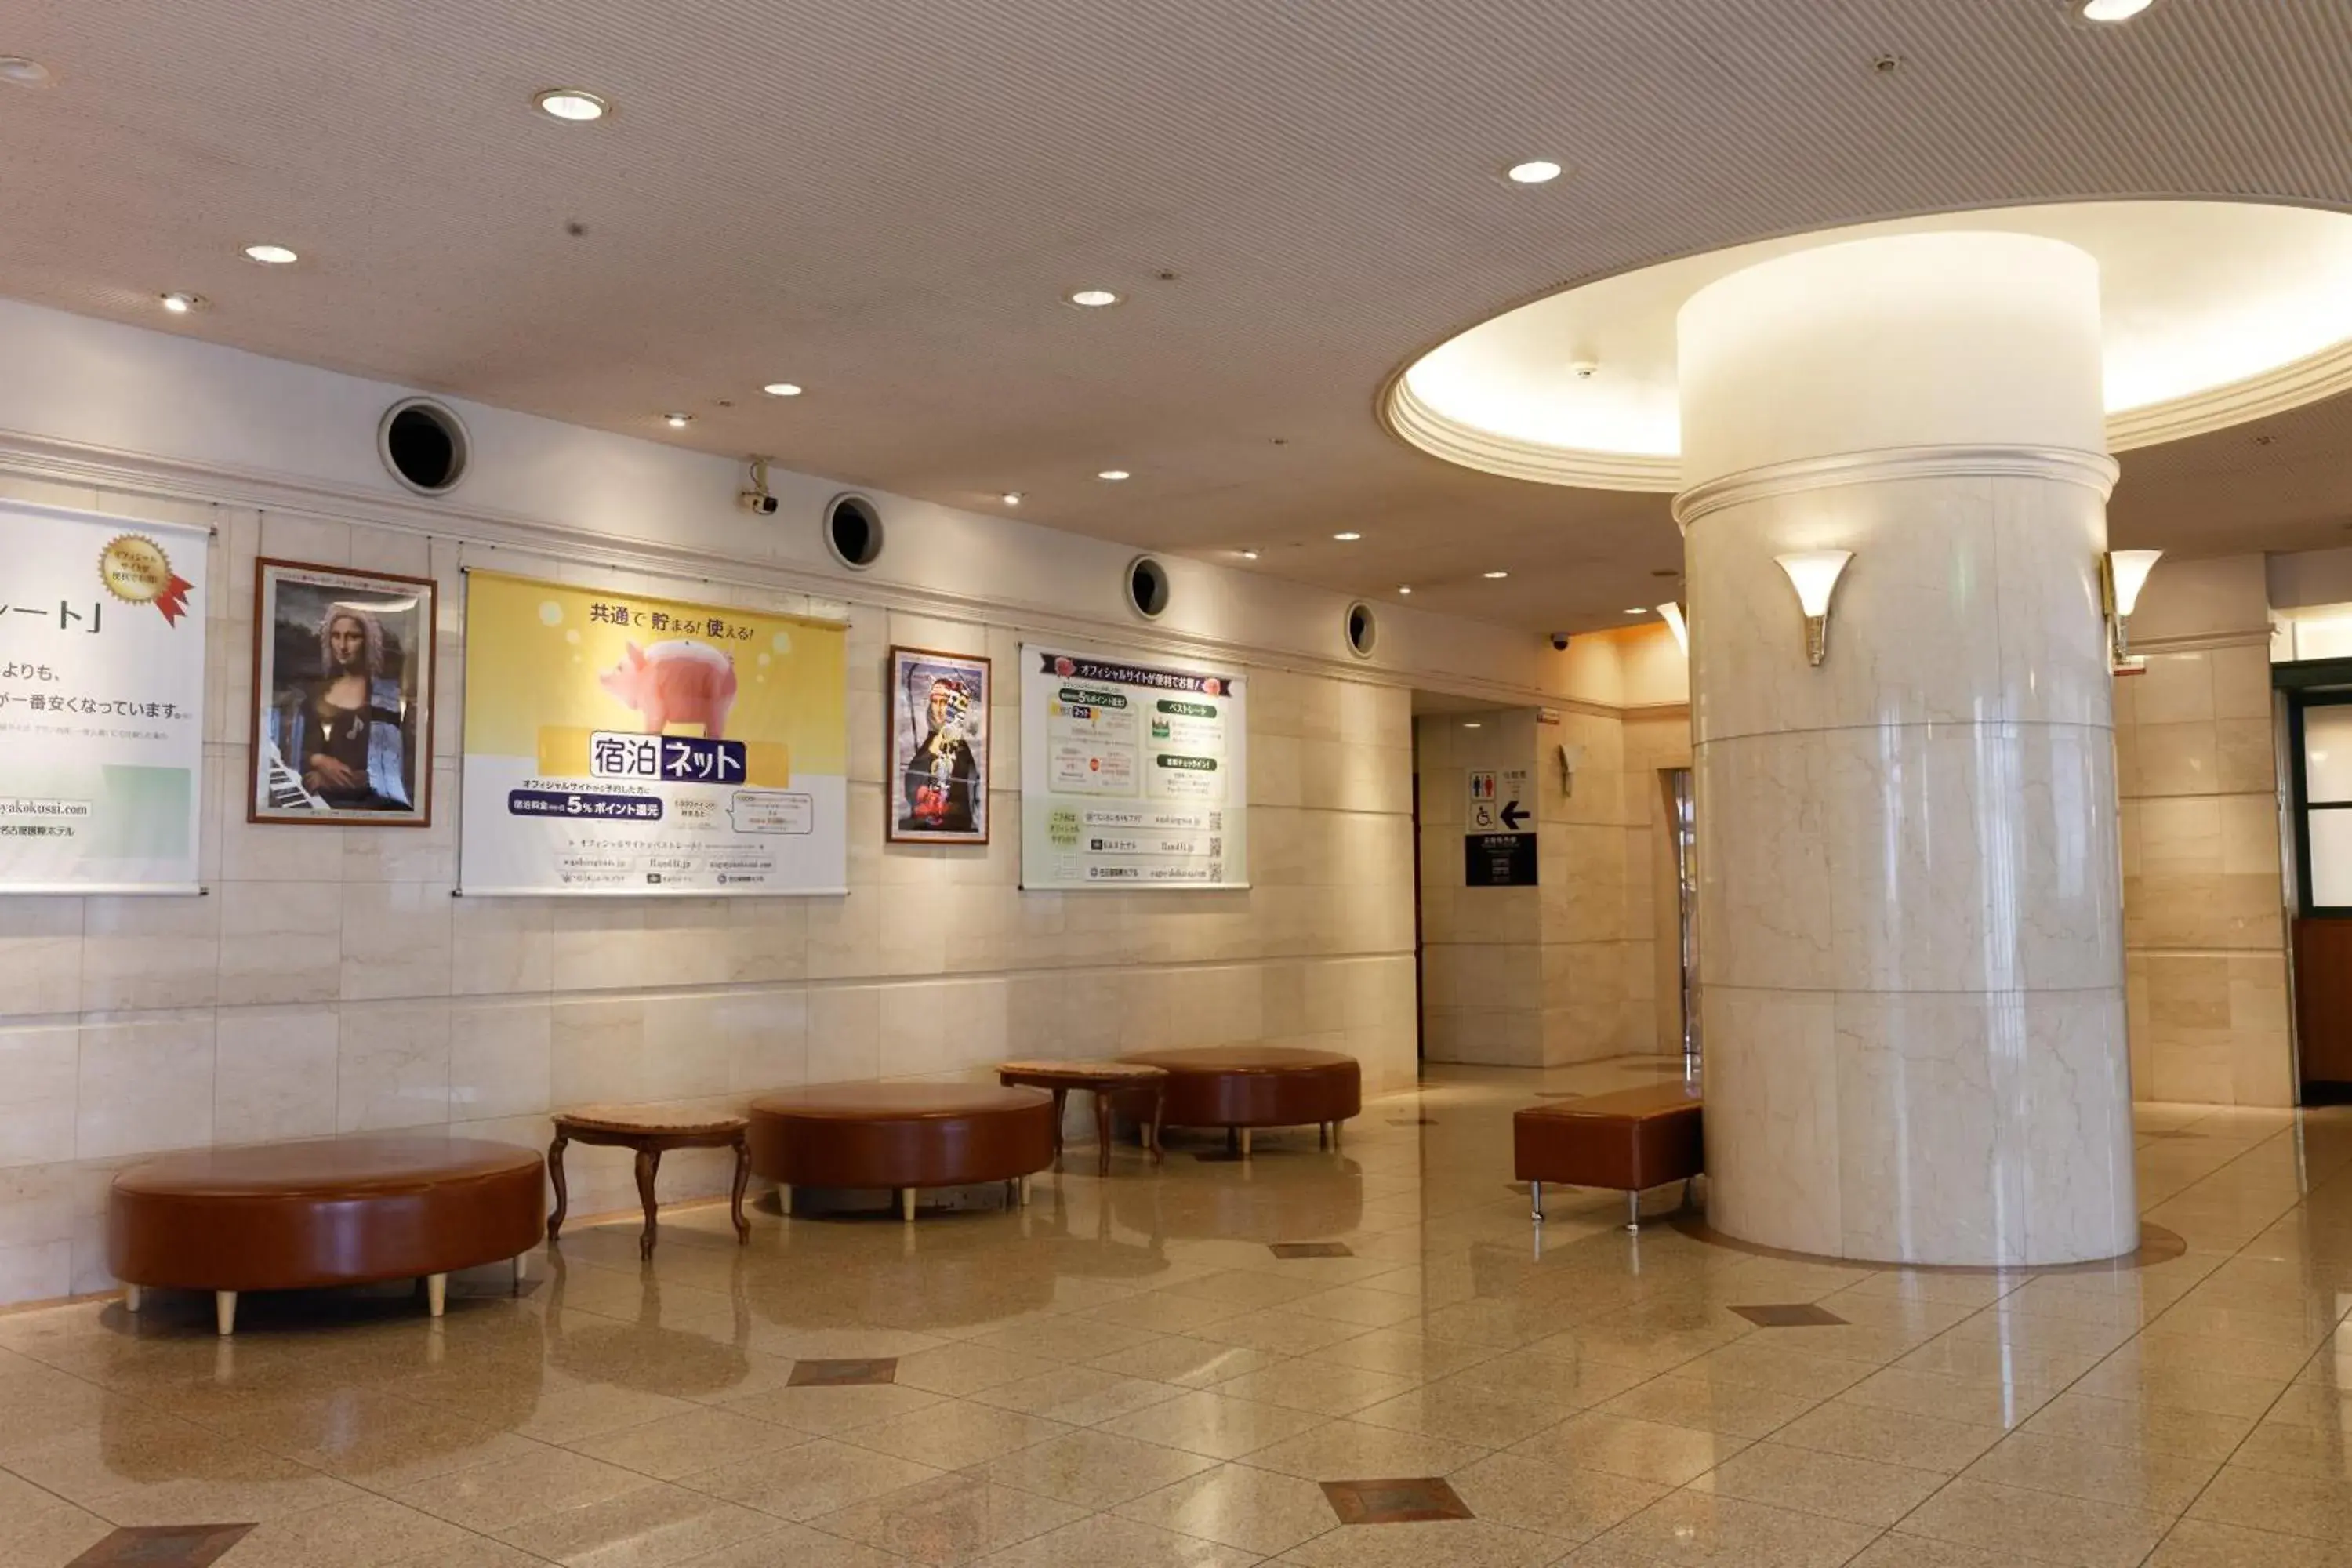 Lobby or reception, Lobby/Reception in Kumamoto Washington Hotel Plaza